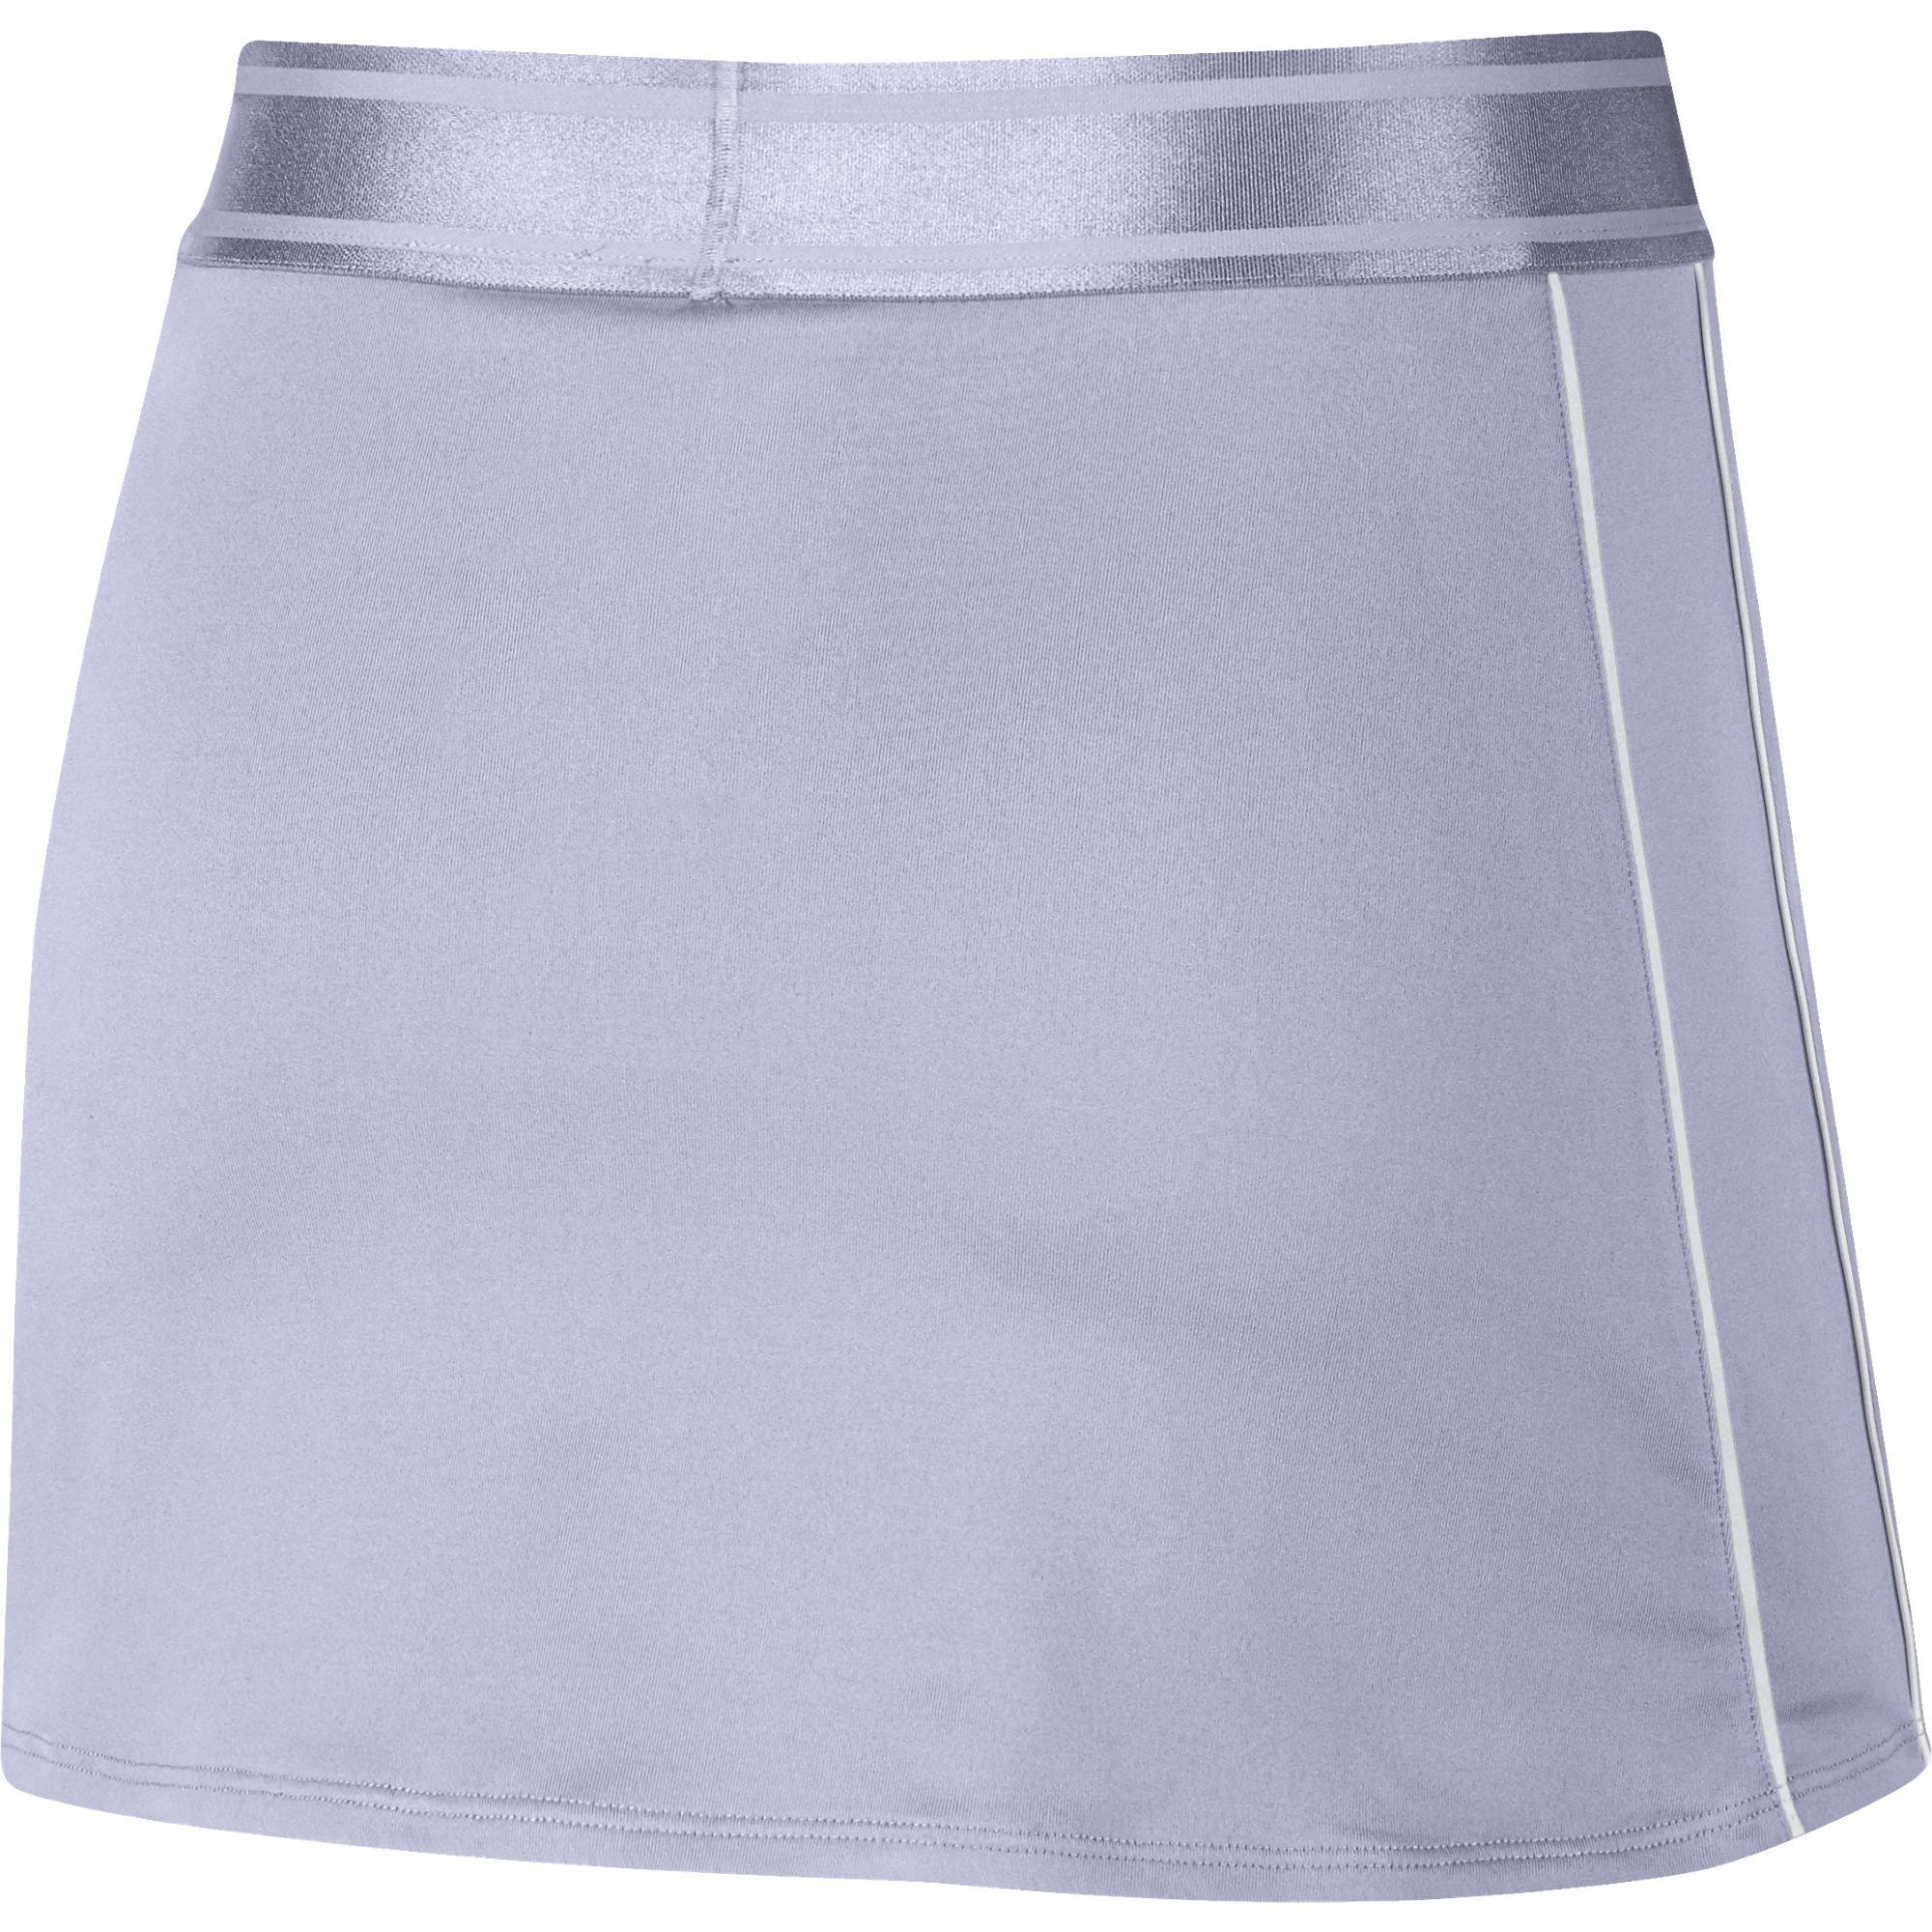 Теннисные юбки в школу. Женская юбка теннисная Wilson Team II skirt 12.5 w - White. Юбка найк для тенниса. Серая теннисная юбка. Теннисная юбка в школу.